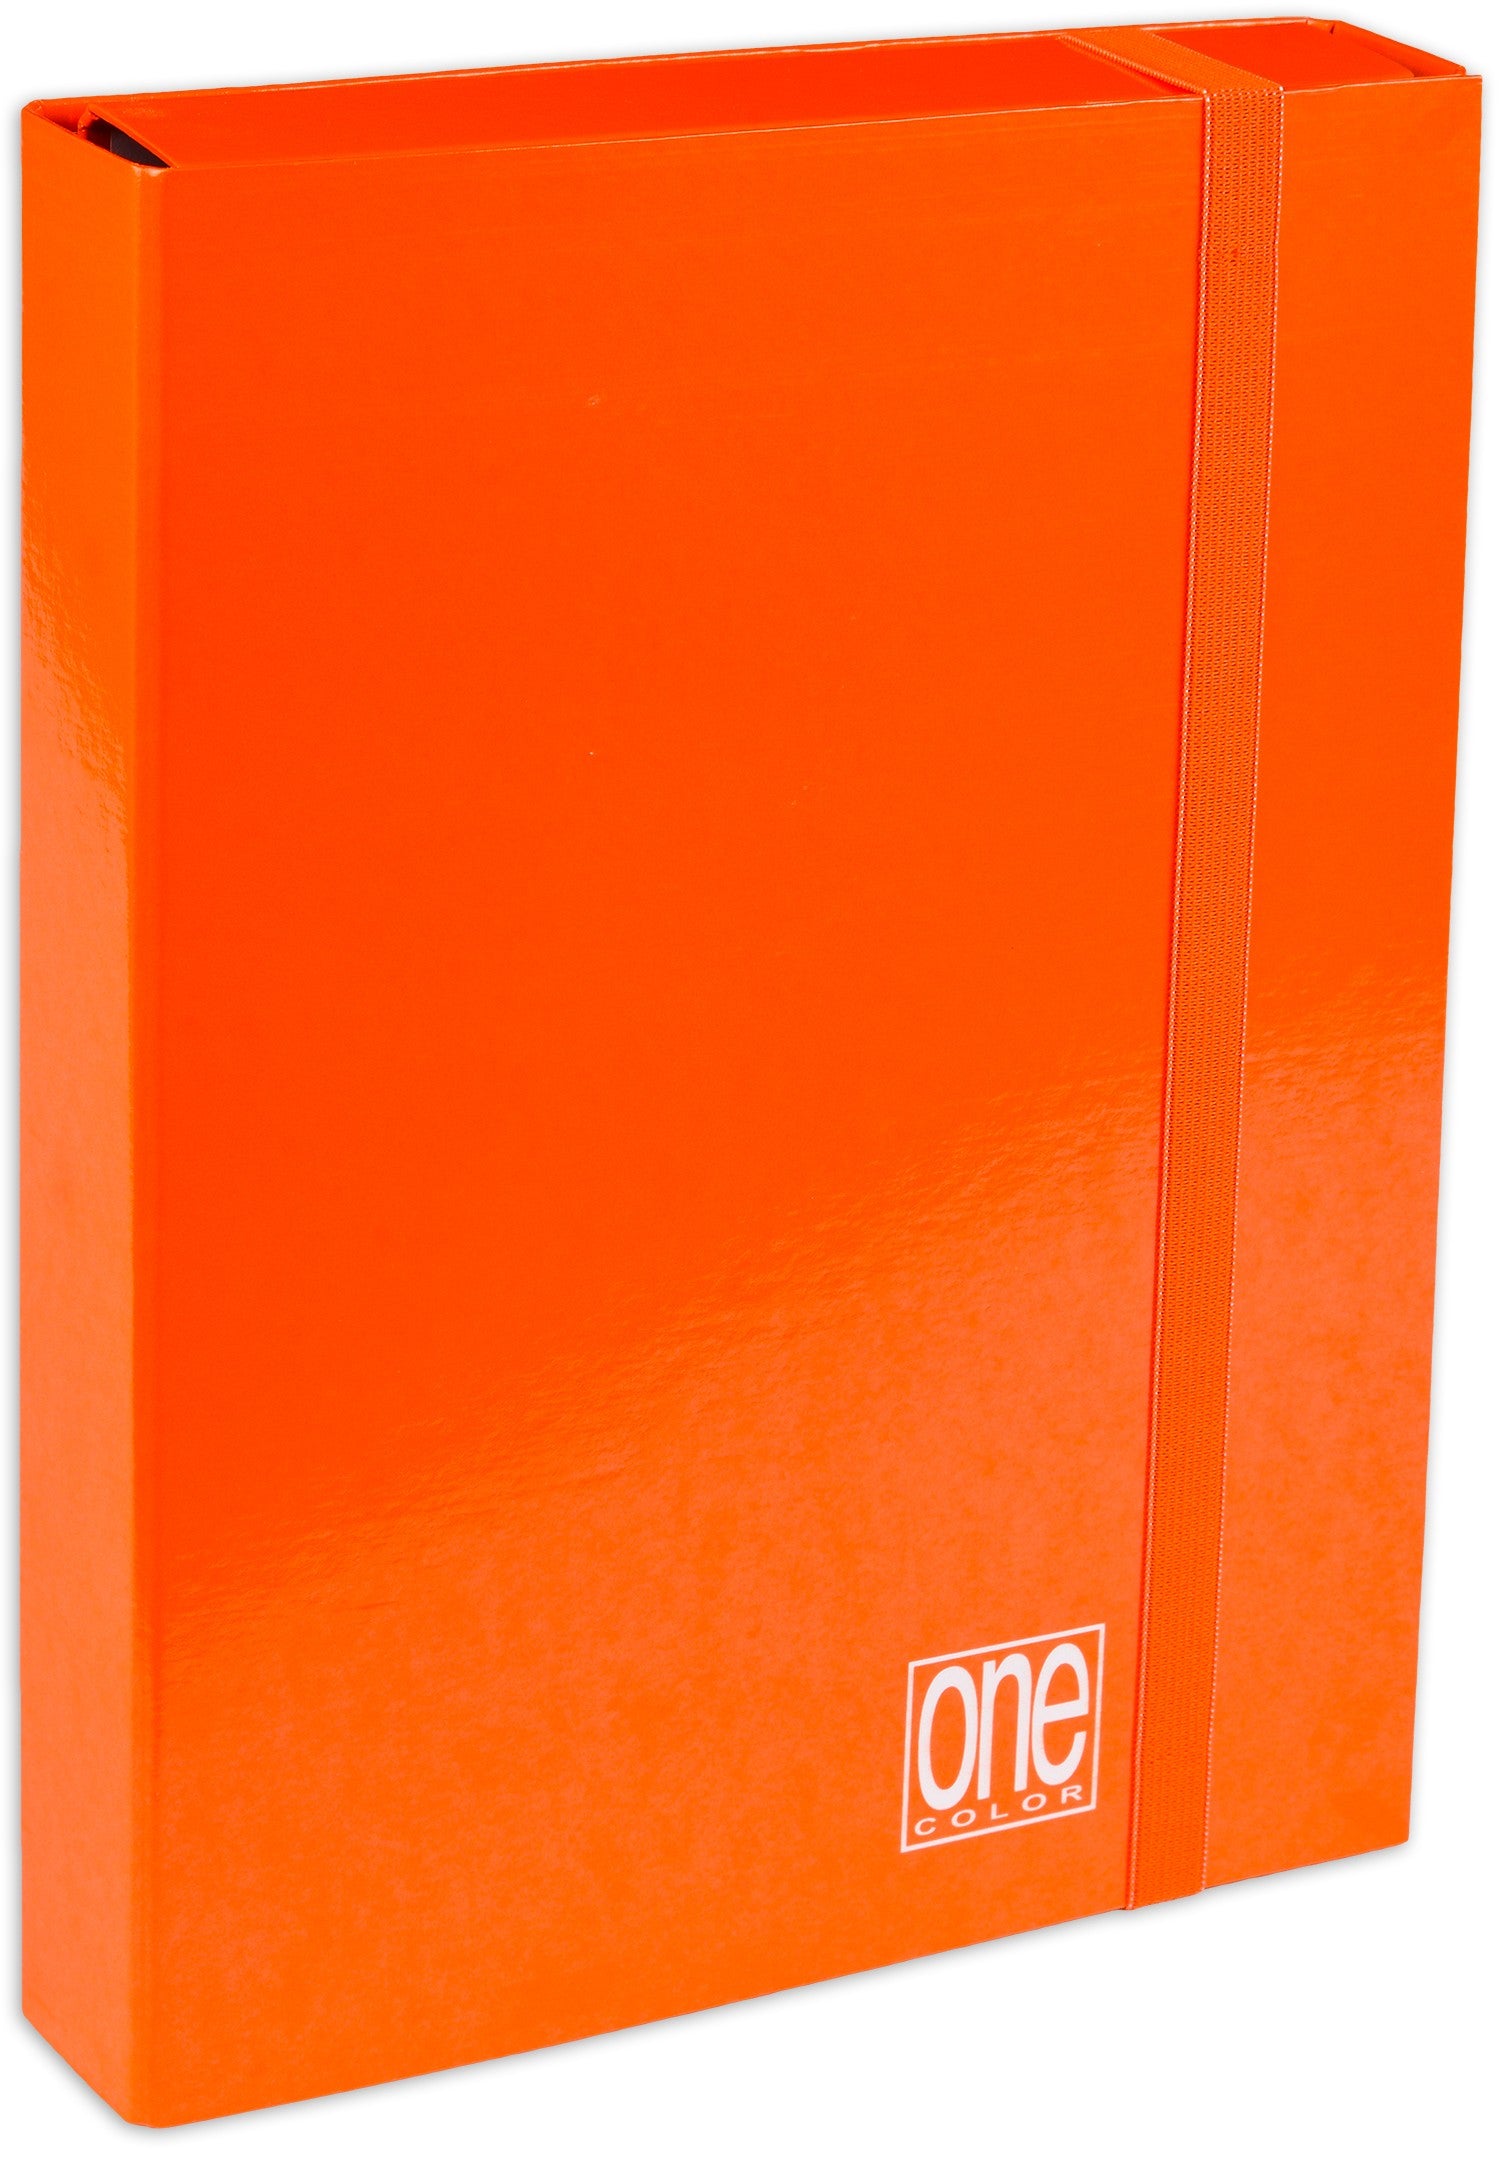 Cartella portaprogetti con elastico 25x35cm dorso5cm arancio